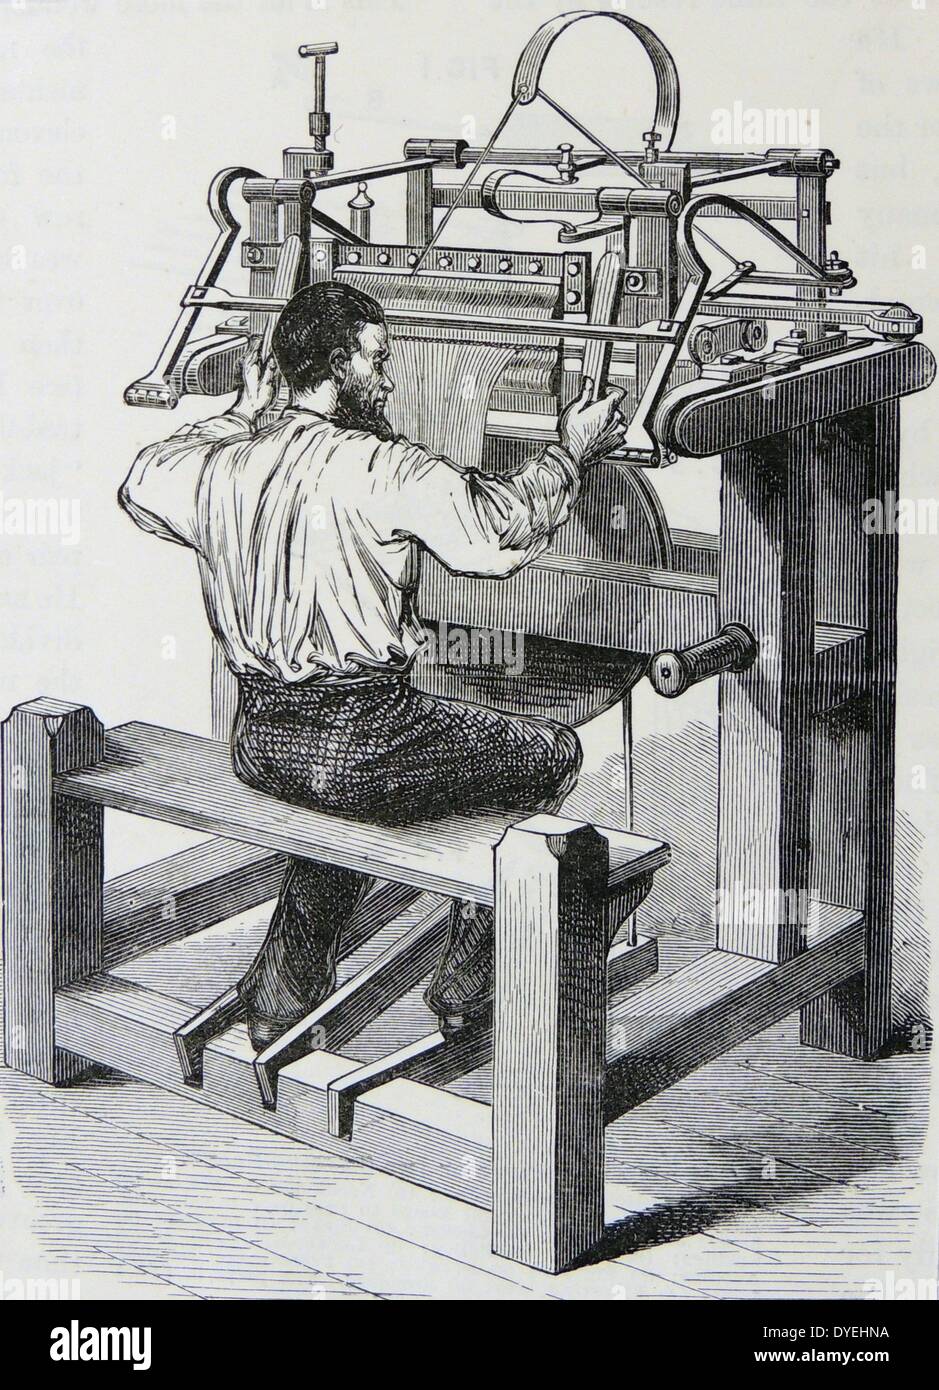 Bastidor de almacenamiento weaver en el trabajo en una máquina operada de pedal. Grabado, Londres, c1880. Foto de stock